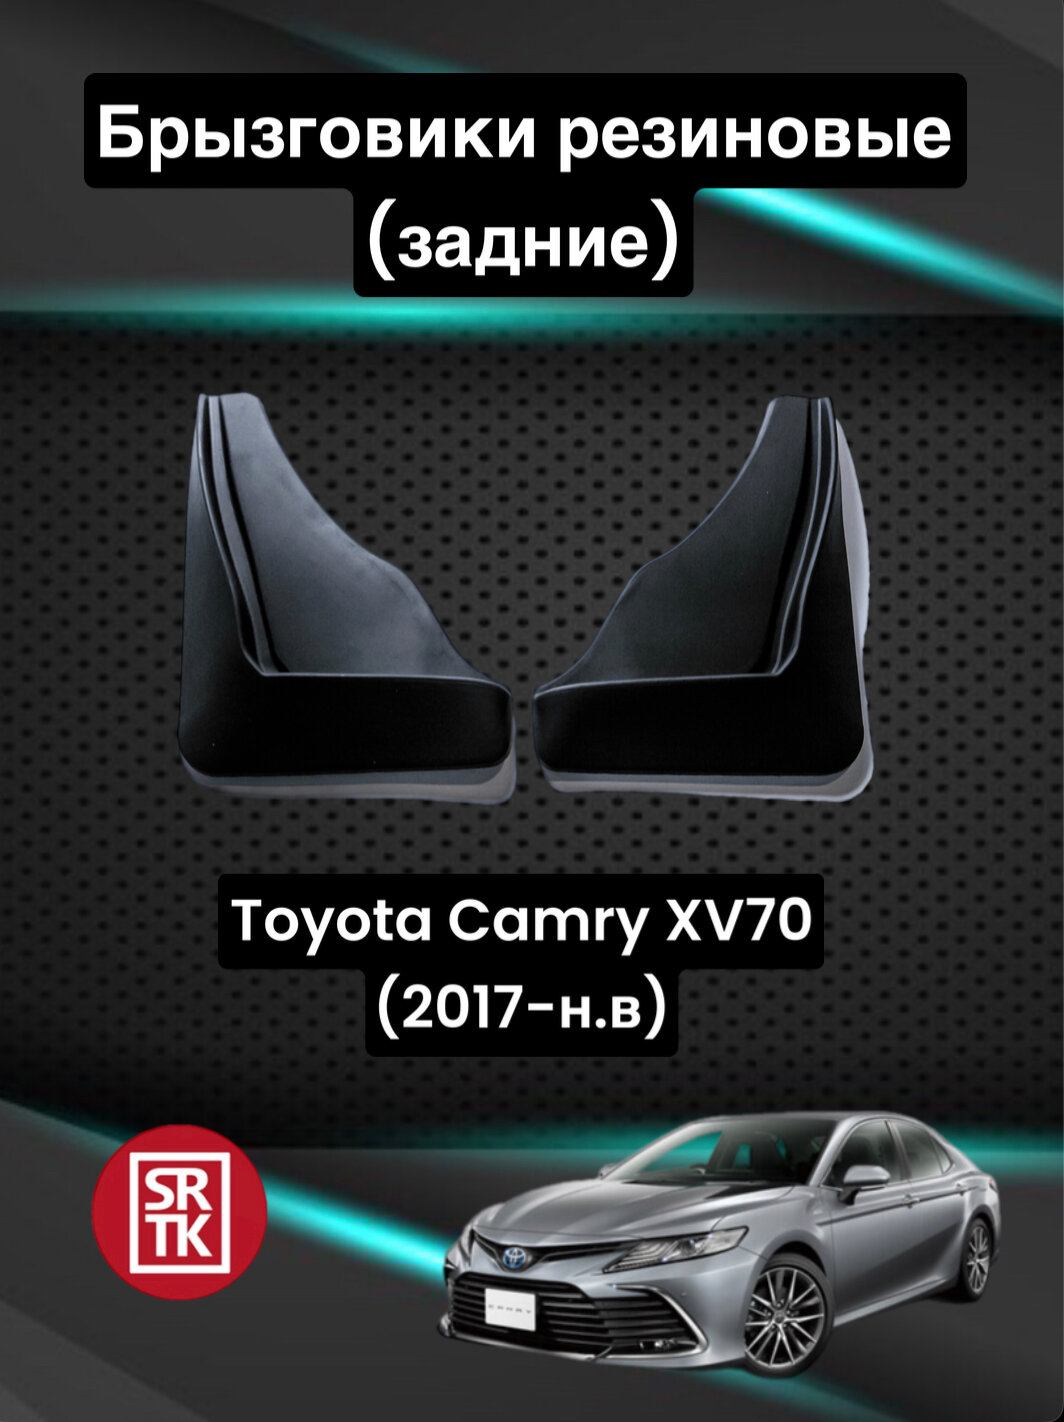 Брызговики резиновые для Toyota Camry (XV70) (2017-) / Брызговики автомобильные для Тойота Камри 70 / Задние